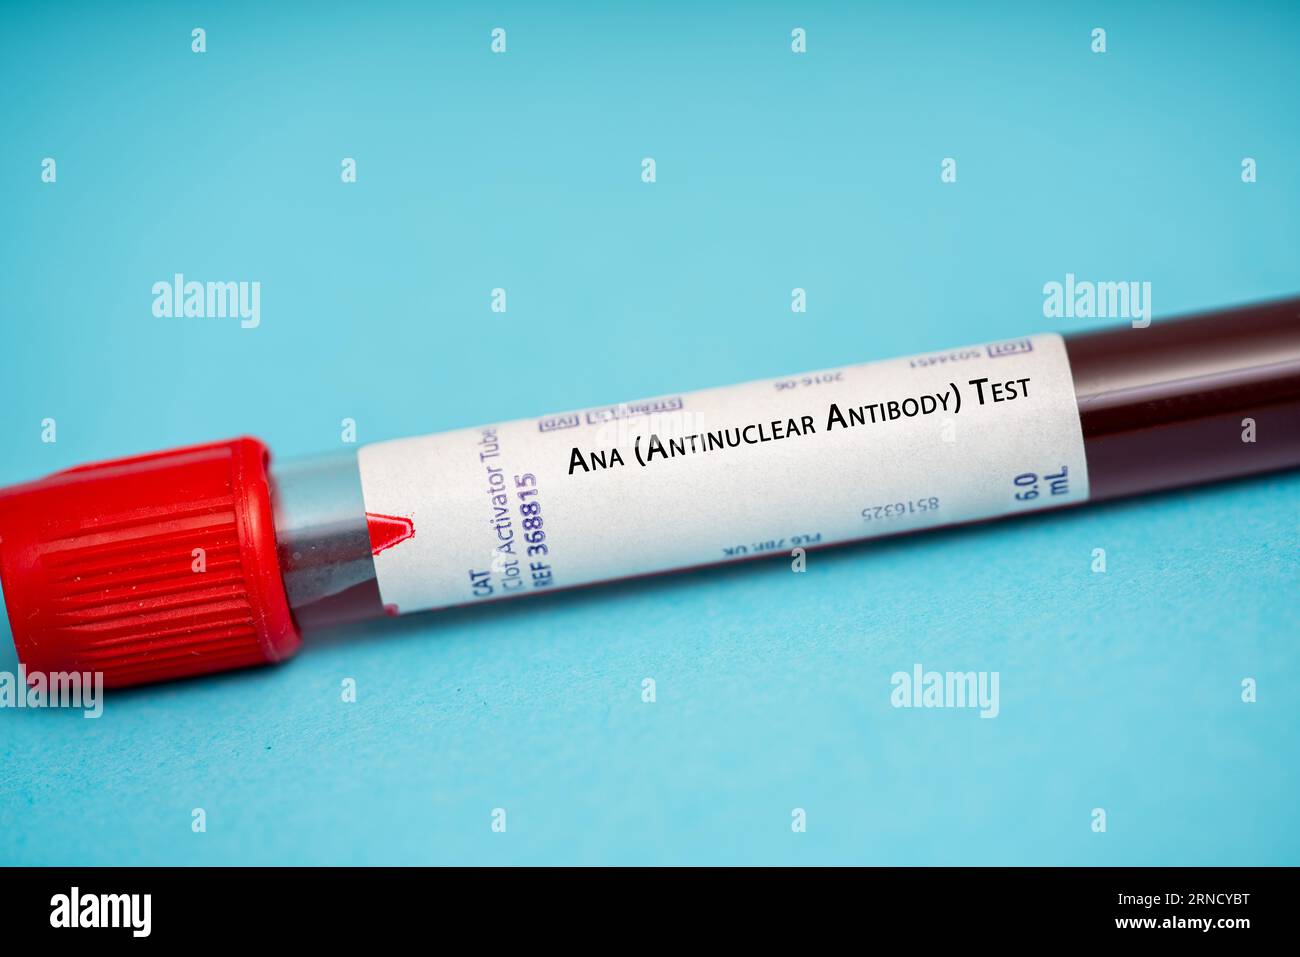 Test ANA (anticorps antinucléaire) ce test mesure les niveaux d'anticorps qui attaquent les noyaux des cellules. Il est utilisé pour diagnostiquer les maladies auto-immunes Banque D'Images